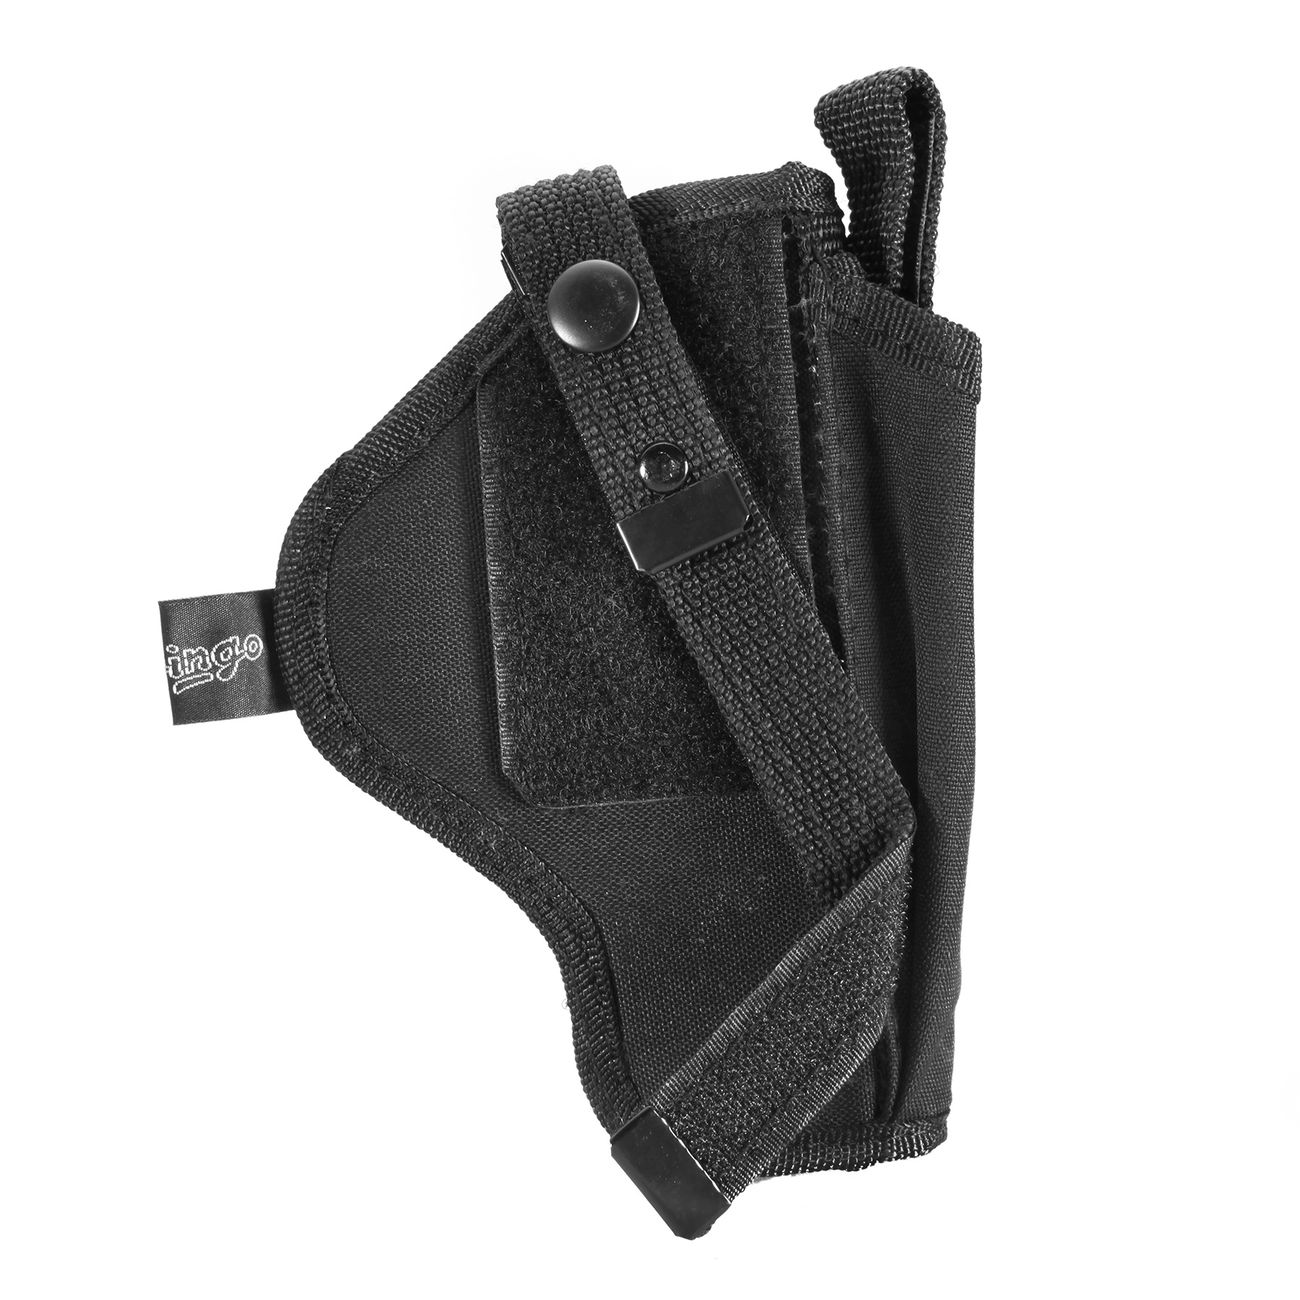 Dingo Gürtelholster für kleine Pistolen Cordura schwarz Bild 1